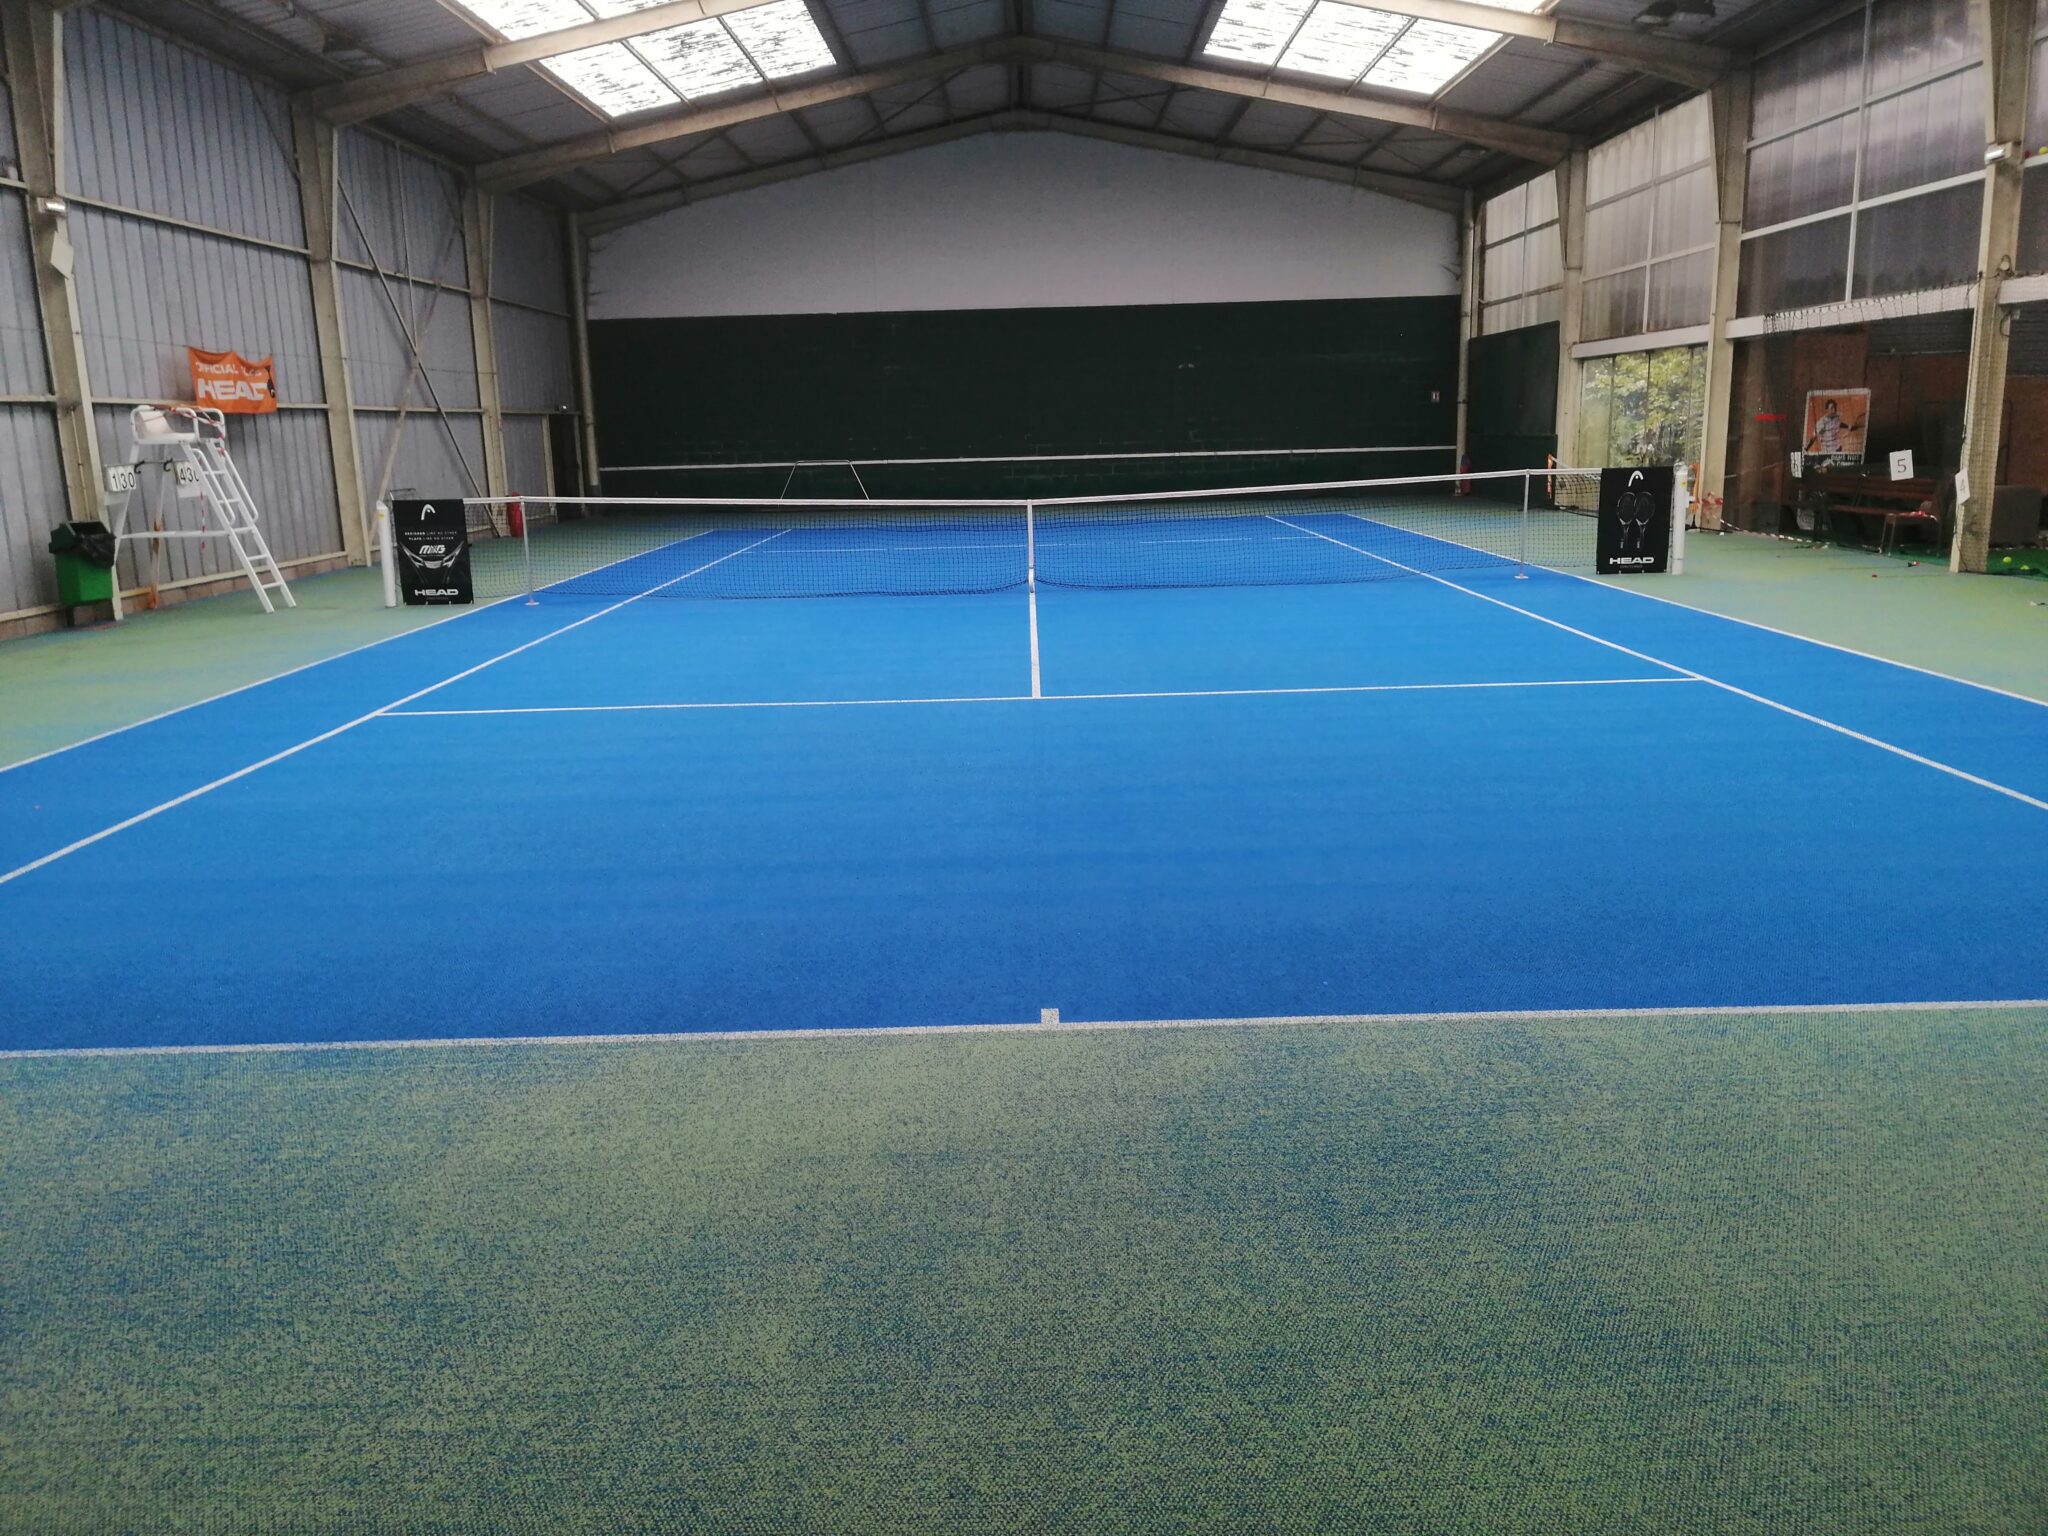 Terrain de tennis intérieur, sol bleu et vert.